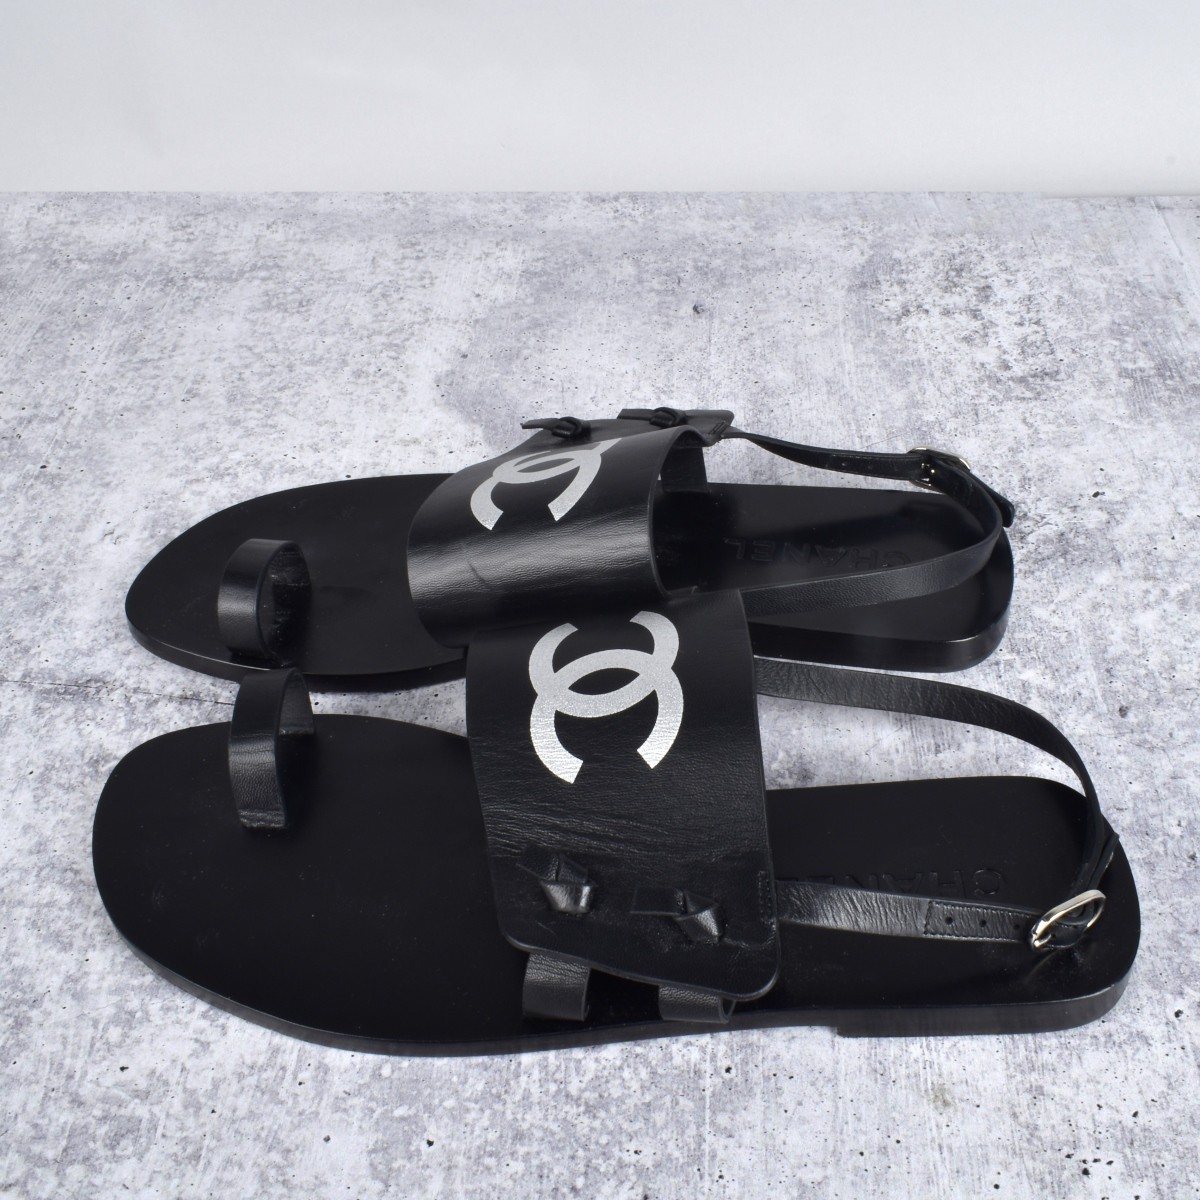 Chanel Black Leather Sandal